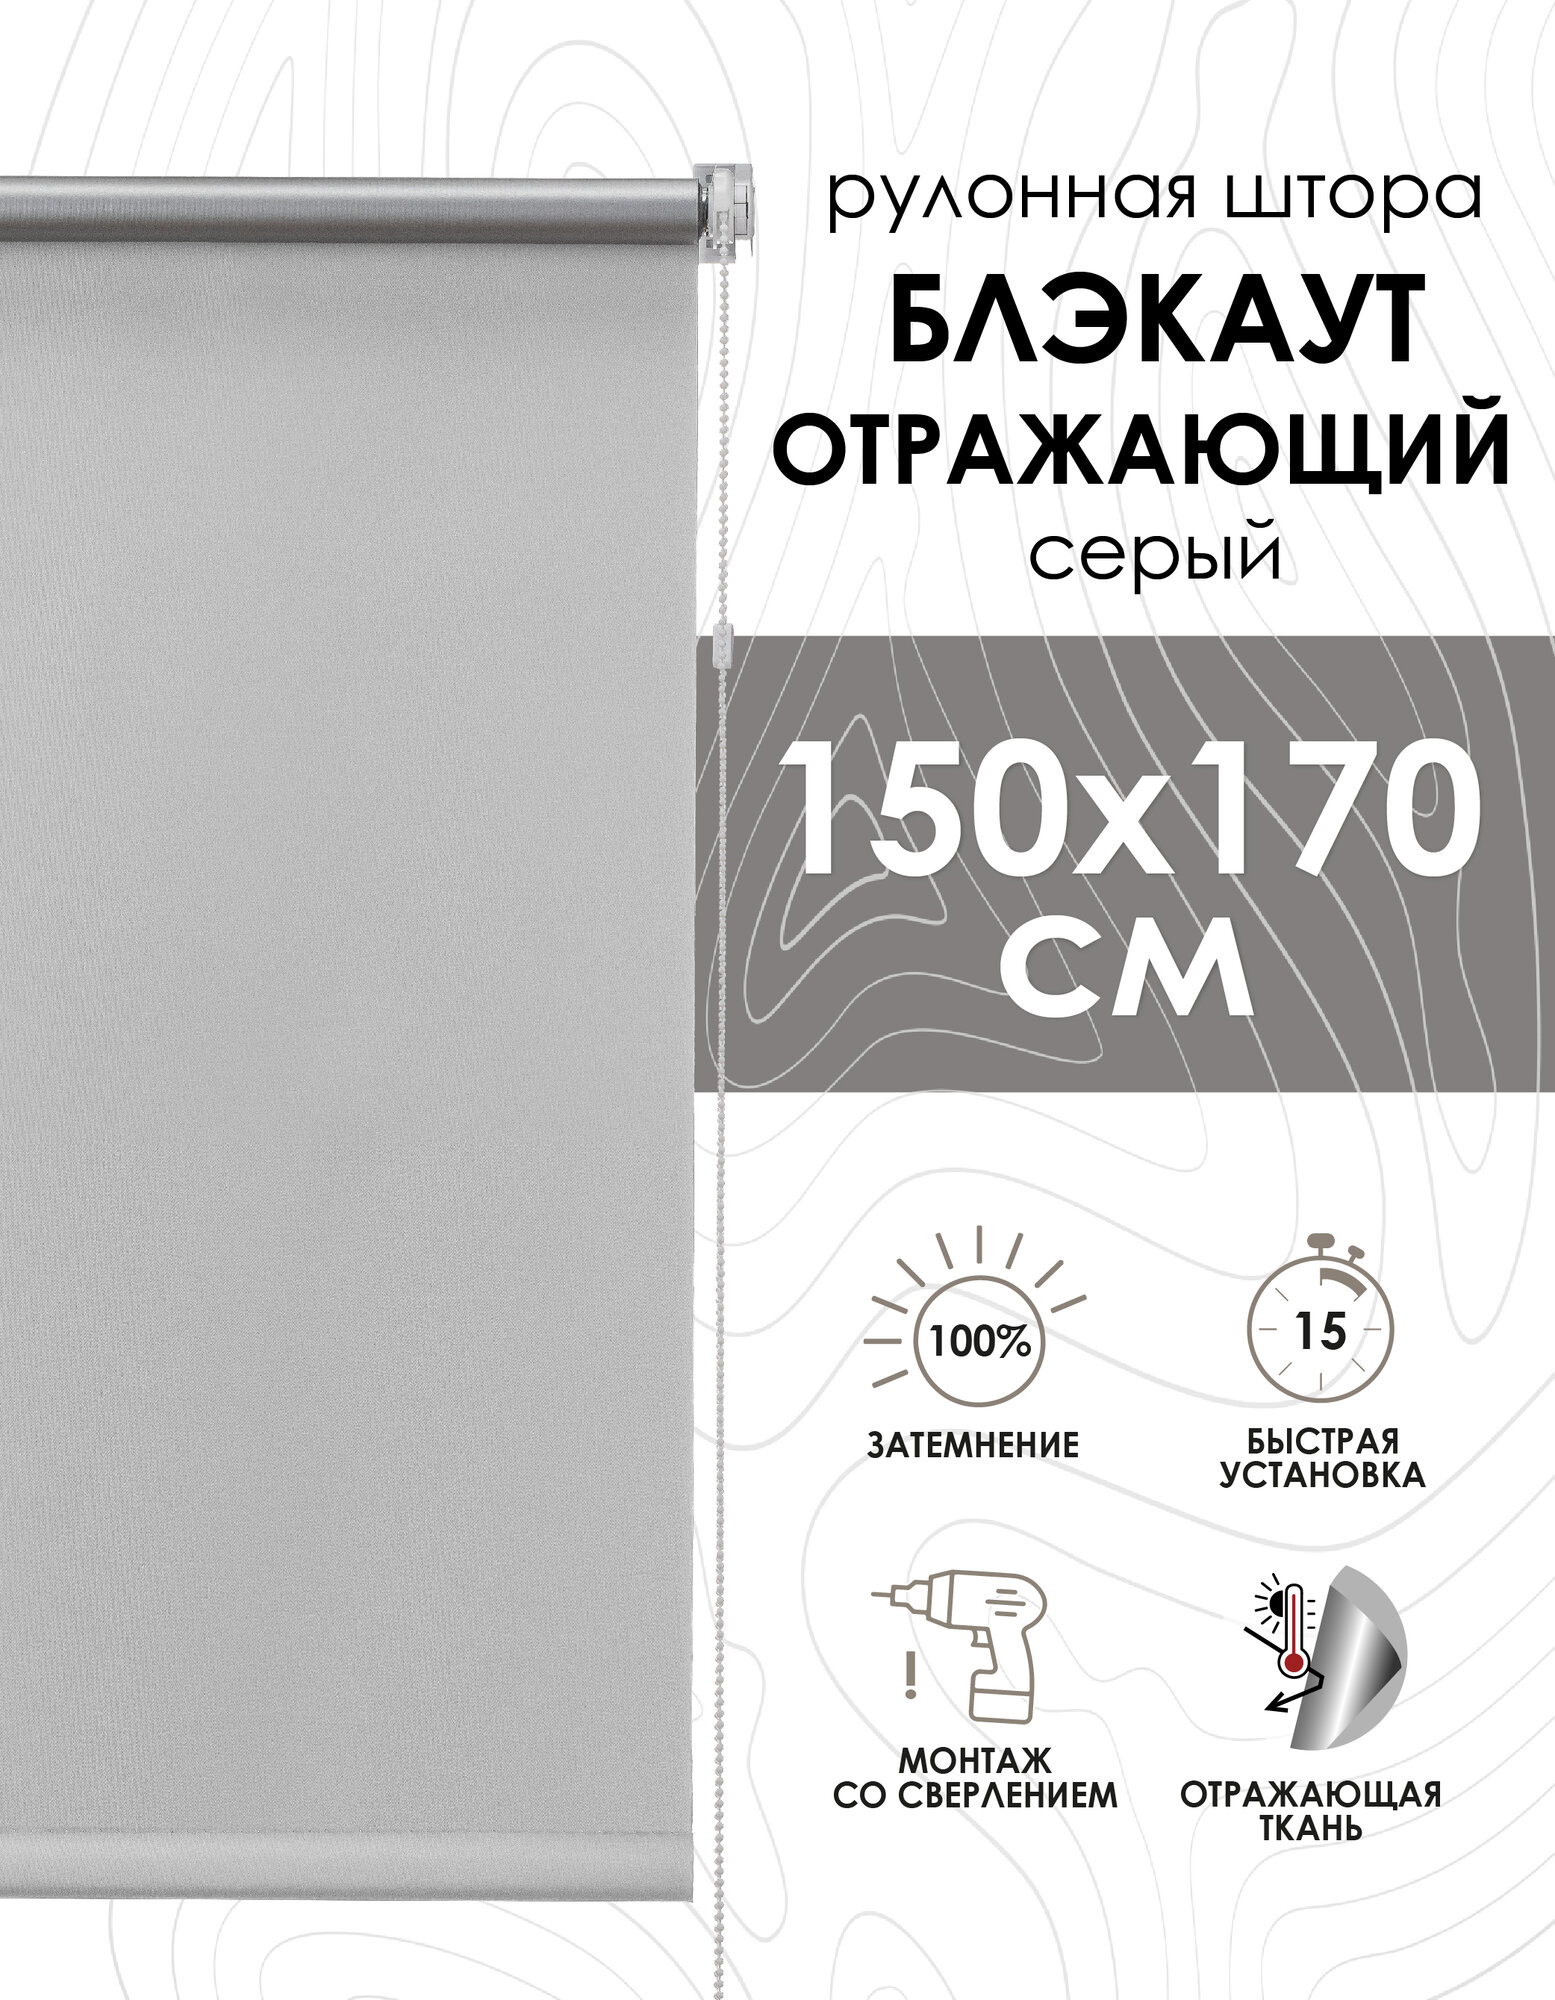 Рулонные шторы Blackout silverback отражающий серый 150х170 см арт. 81462150160